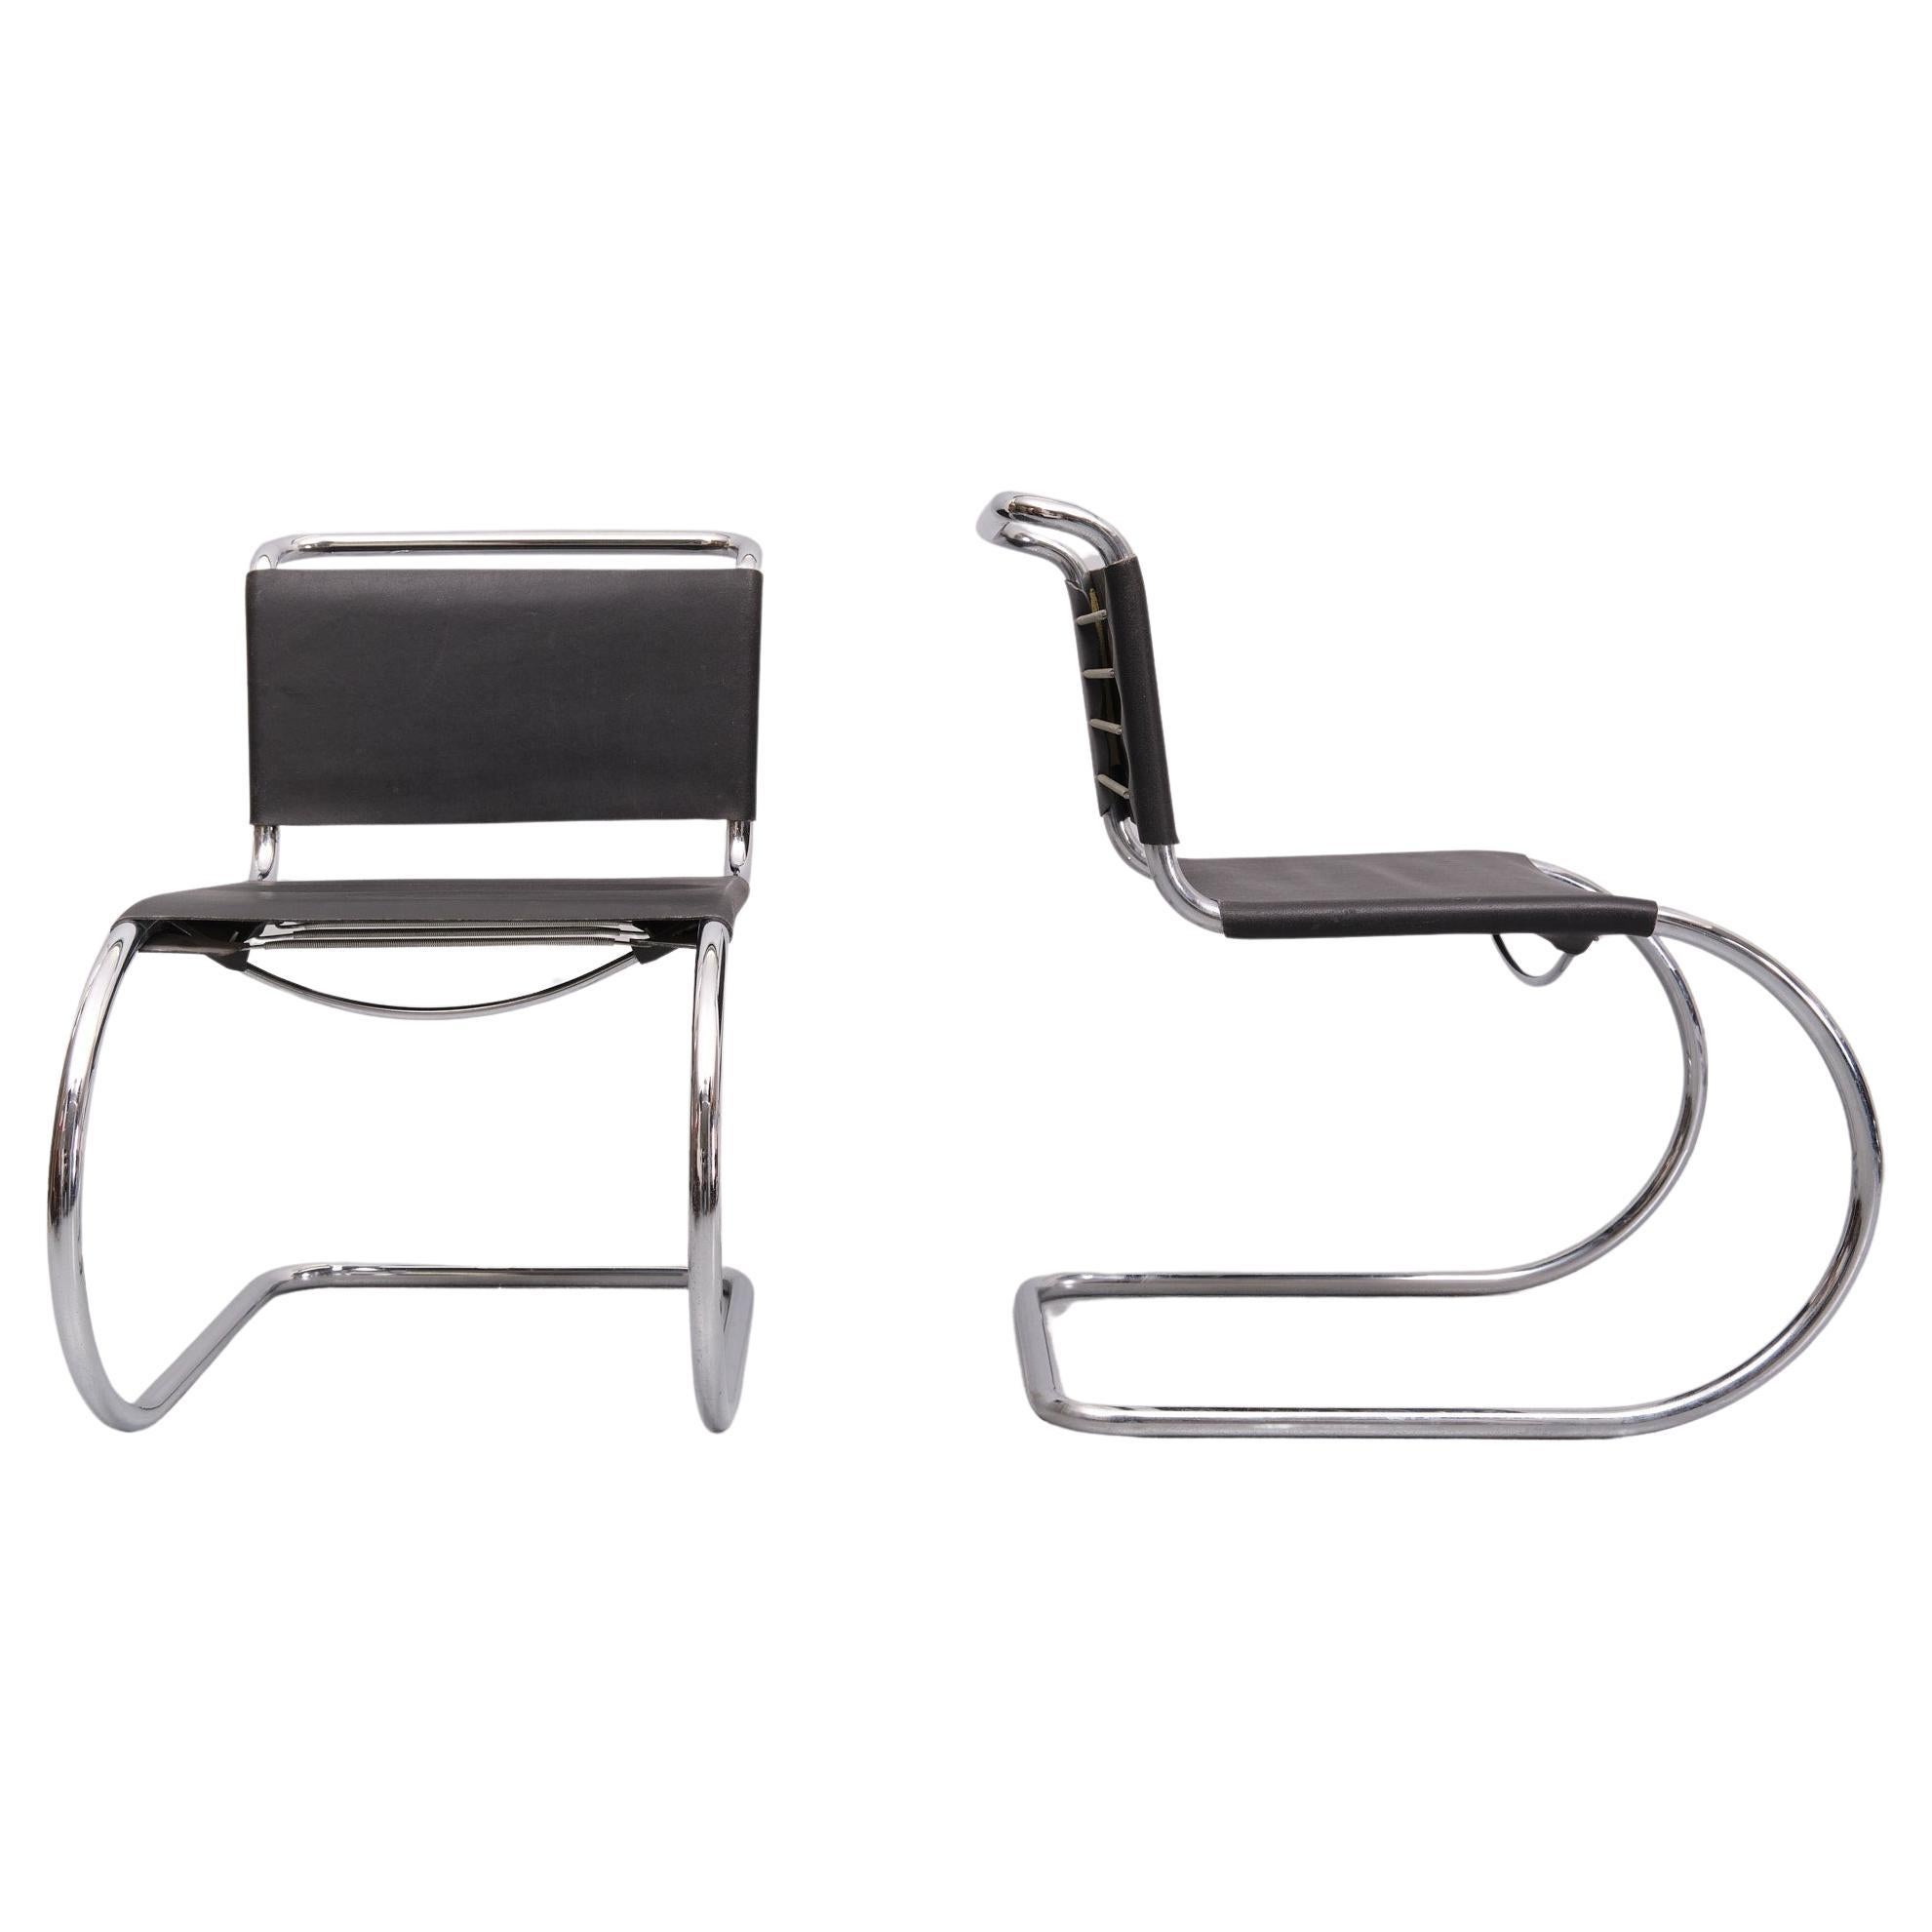 Zwei kultige MR10-Freischwinger . Entwurf von Ludwig Mies van der Rohe 
Gestell aus verchromtem Rohr, mit schwarzer Lederpolsterung. 
Dieses Stuhlset ist ein Beispiel für sein berühmtes Design aus den frühen 1960er Jahren. Der Stuhl MR10 wurde